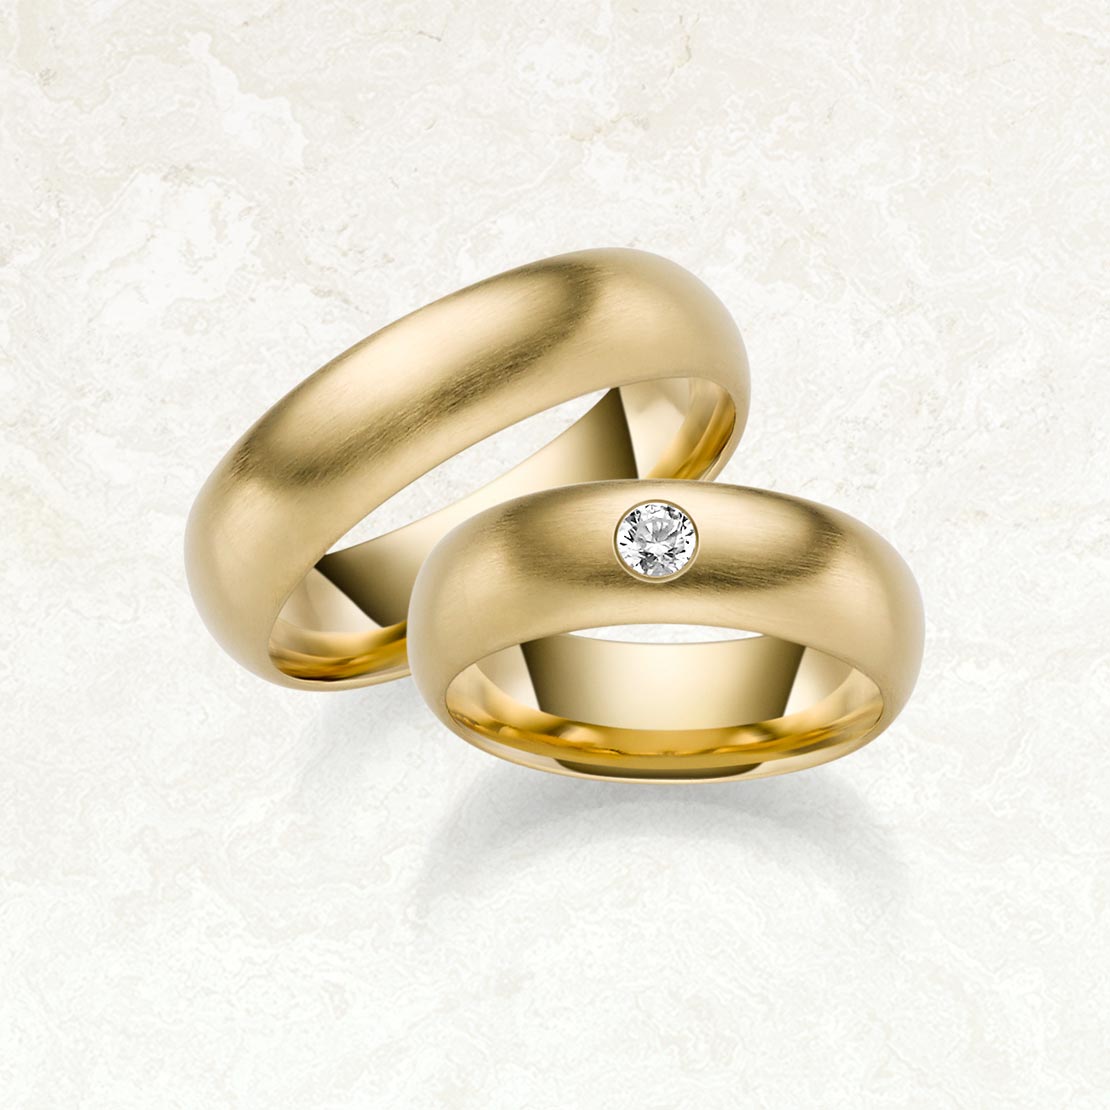 RTAMAR20 Tamur wedding rings